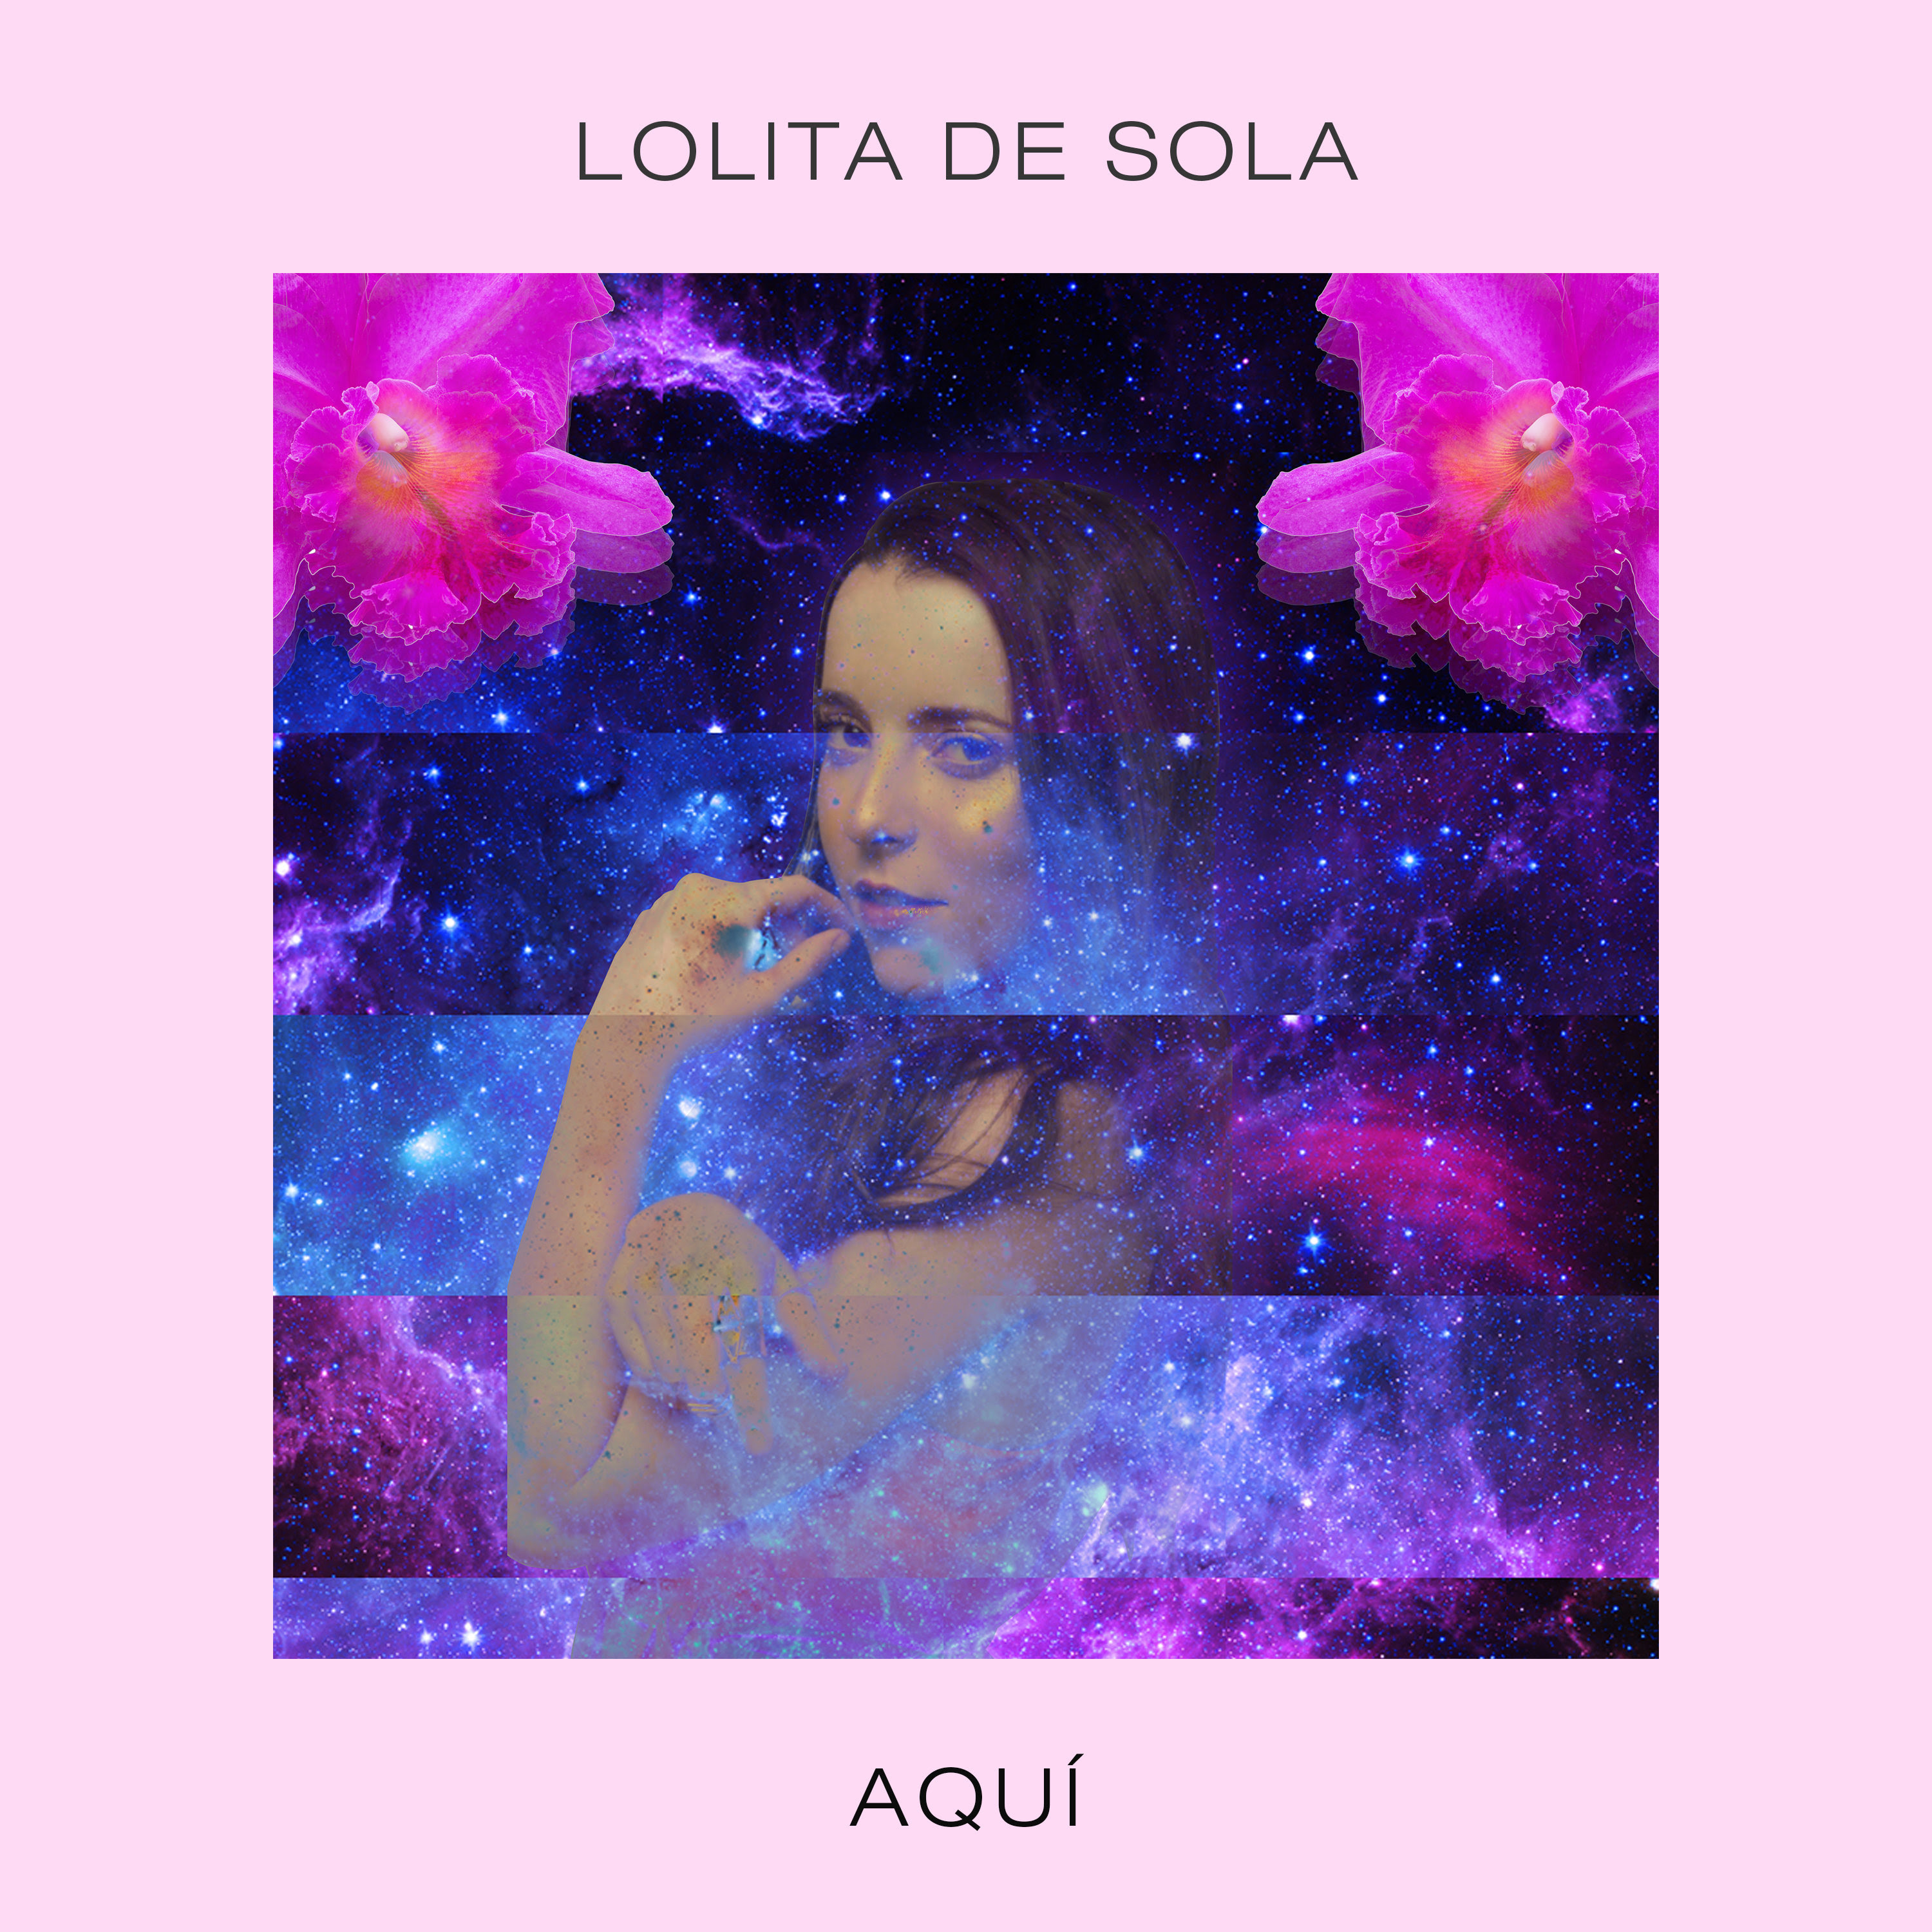 Lolita de Sola nos presenta su música